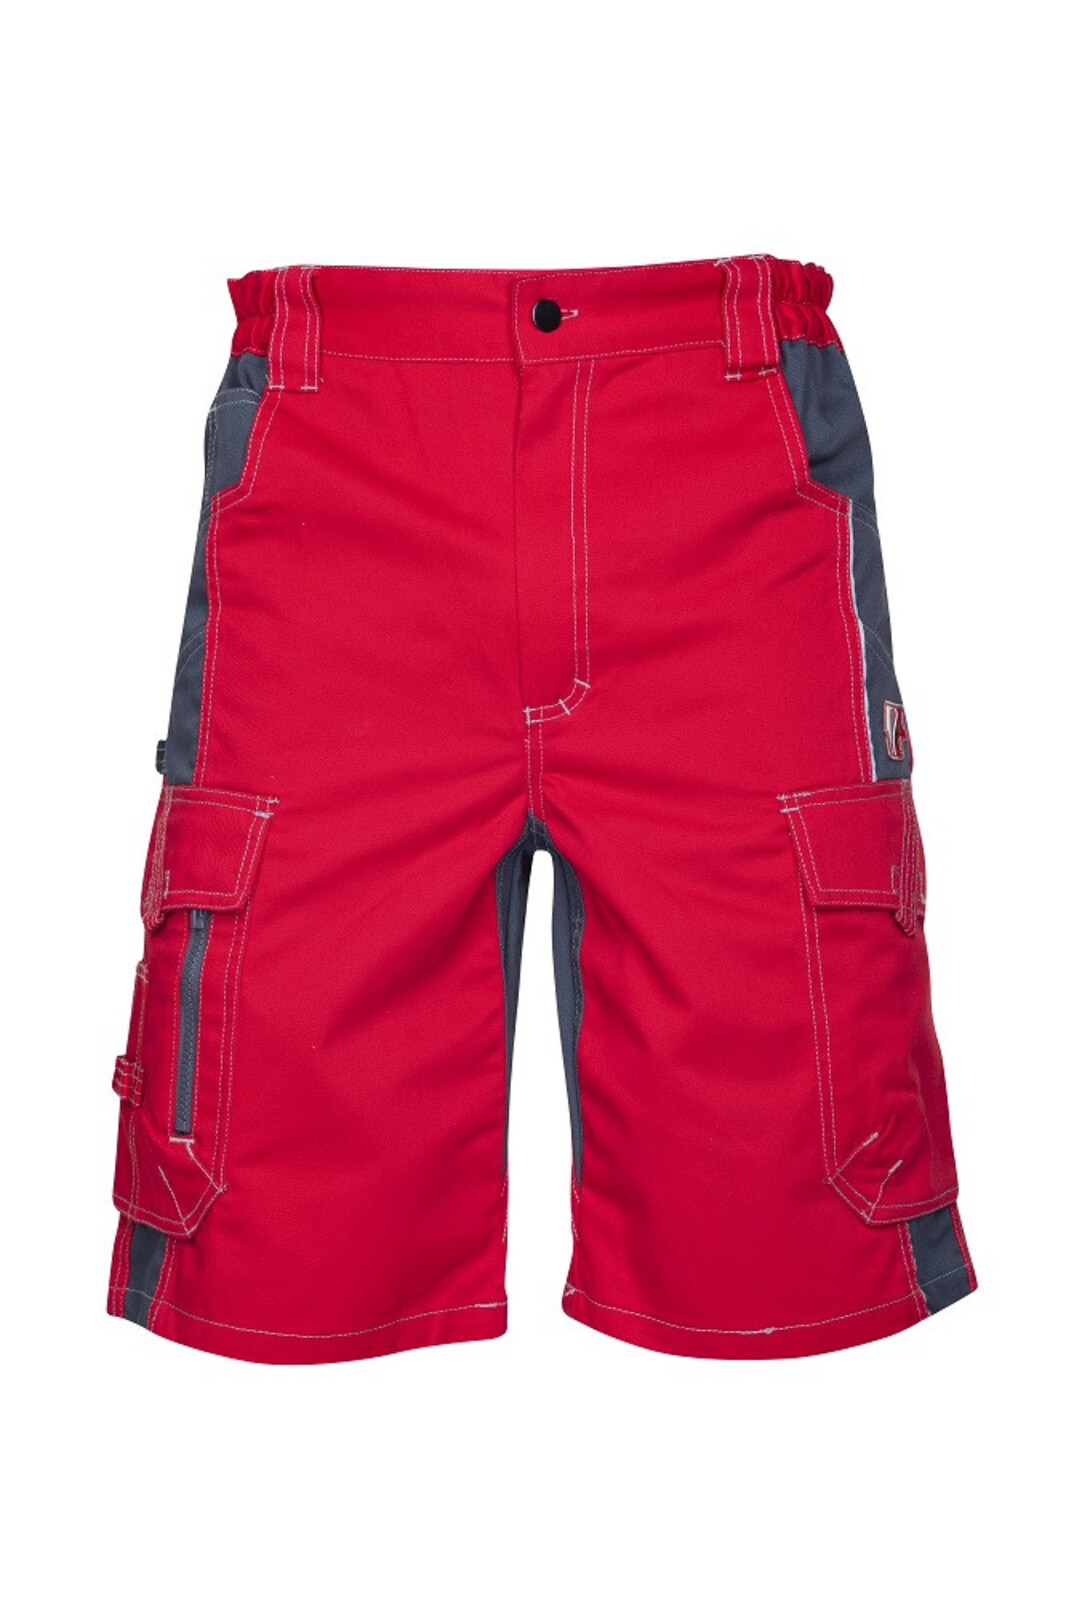 Pánske montérkové šortky Ardon Vision - veľkosť: 46, farba: červená/sivá